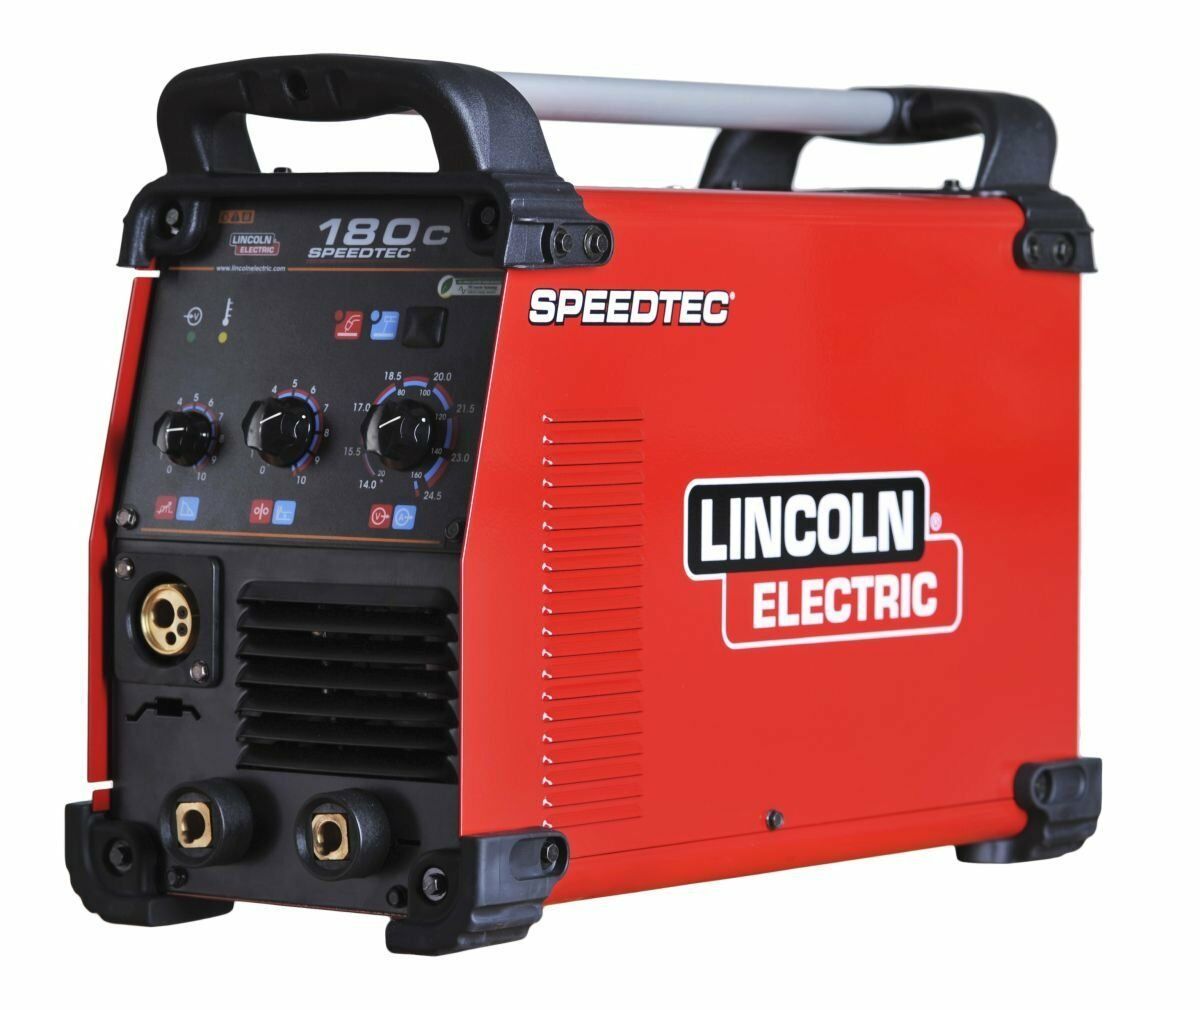 LINCOLN SPEEDTEC 180C İnverter 220 Volt Çanta Gazaltı Kaynak Makinası